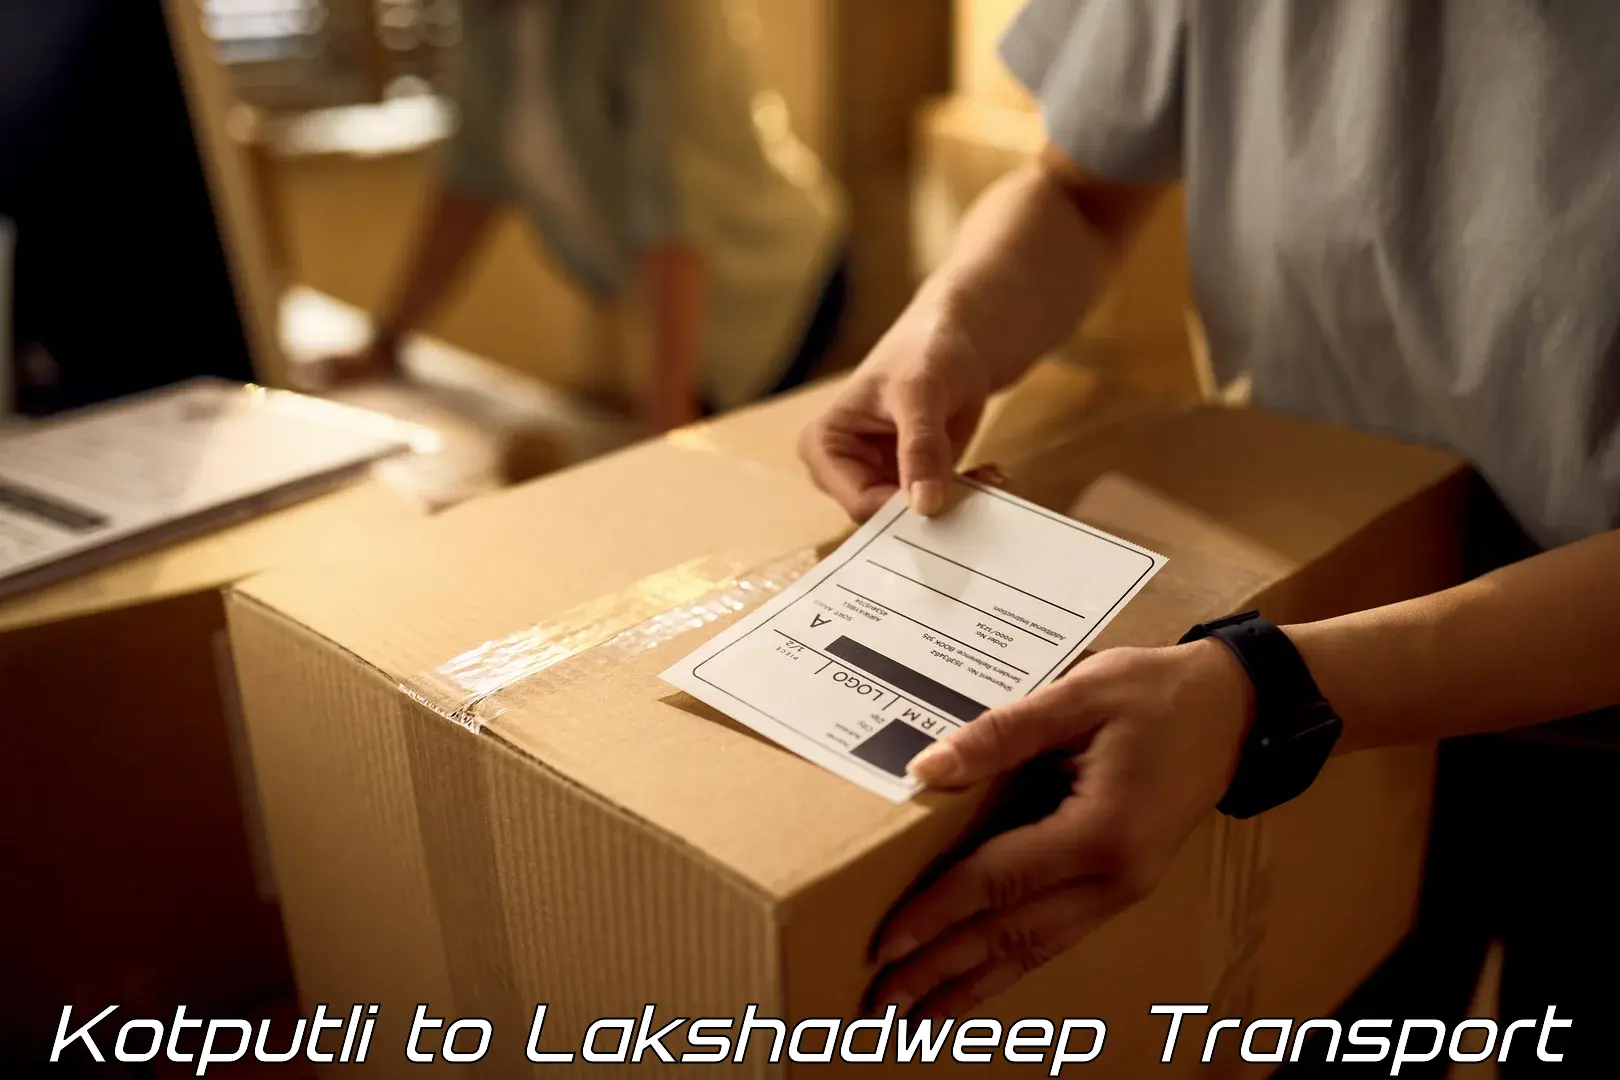 Transport shared services Kotputli to Lakshadweep